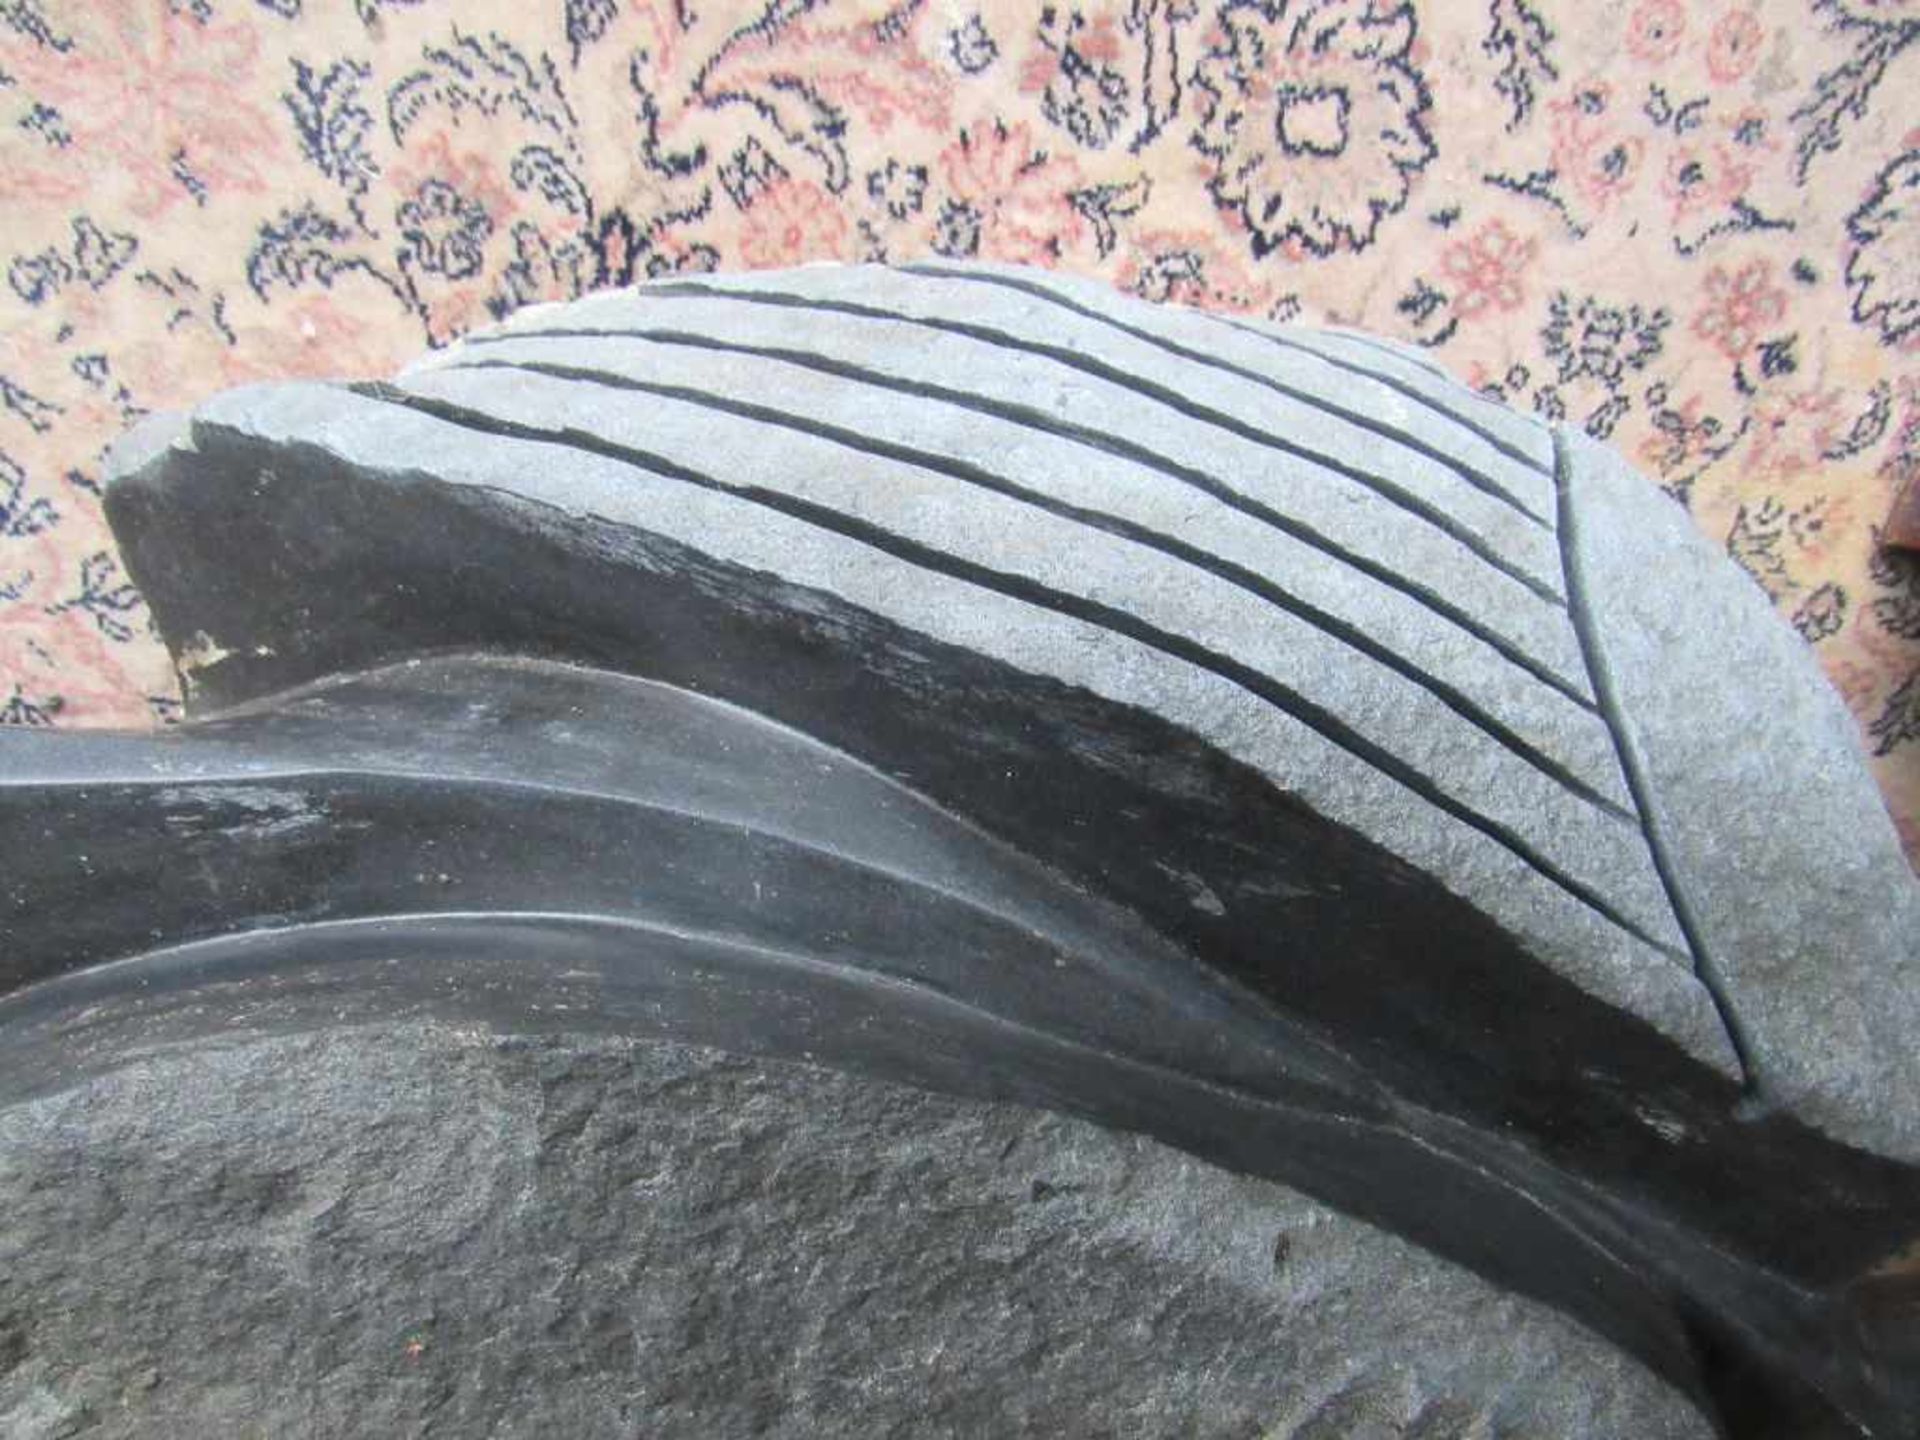 Kunstobjekt handgeschlagene Eule wohl Granit 100cm hoch - Bild 3 aus 5